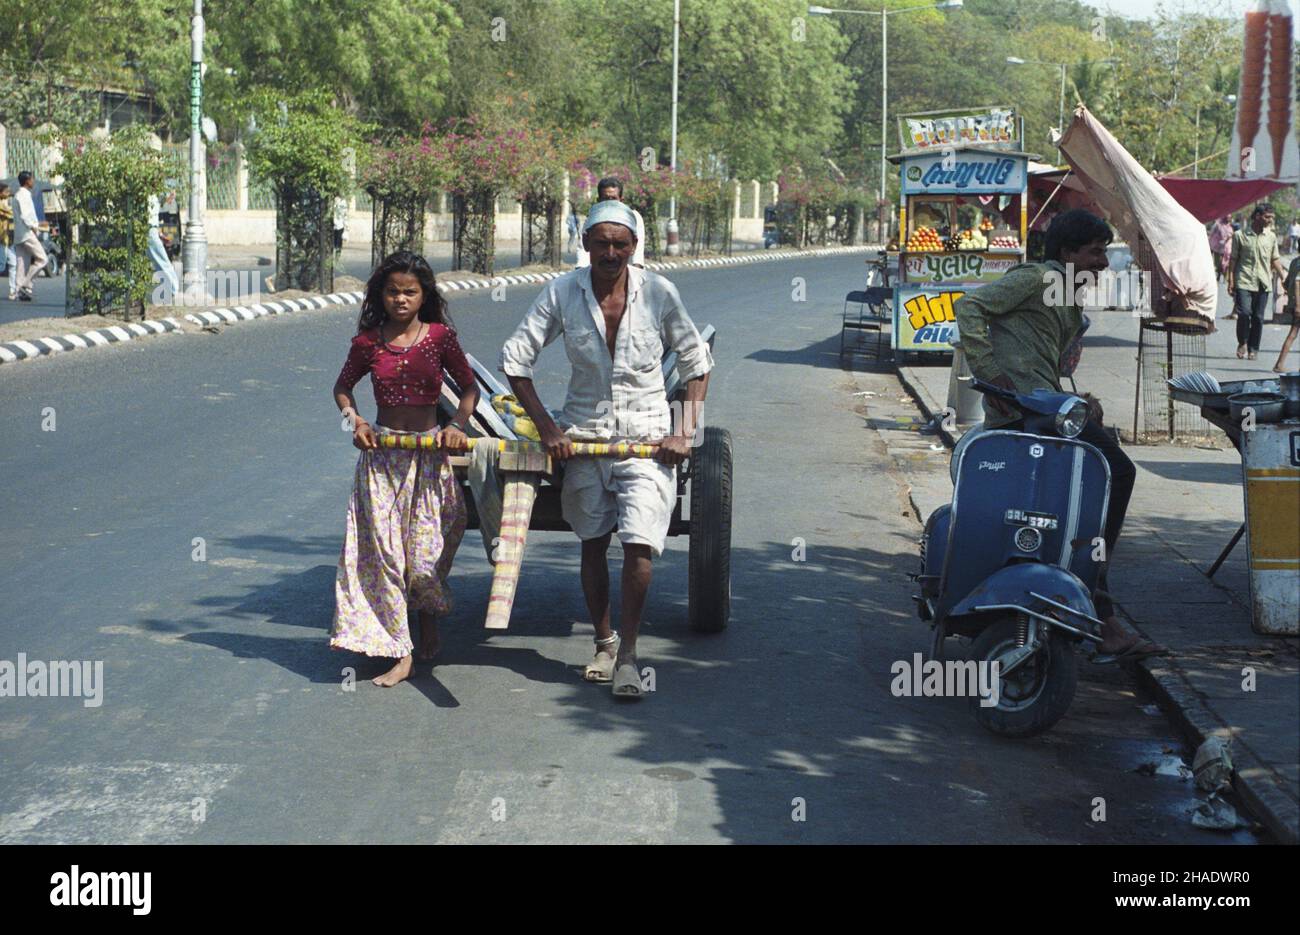 Indie Mumbai 06.03.1994. ¯ycie codzienne w Bombaju. js PAP/Janusz Mazur Mumbai, Indie, 06. März 1994. Ein Mann und ein Mädchen ziehen auf einer Straße in Mumbai eine Kutsche. PAP/JANUSZ MAZUR Stockfoto